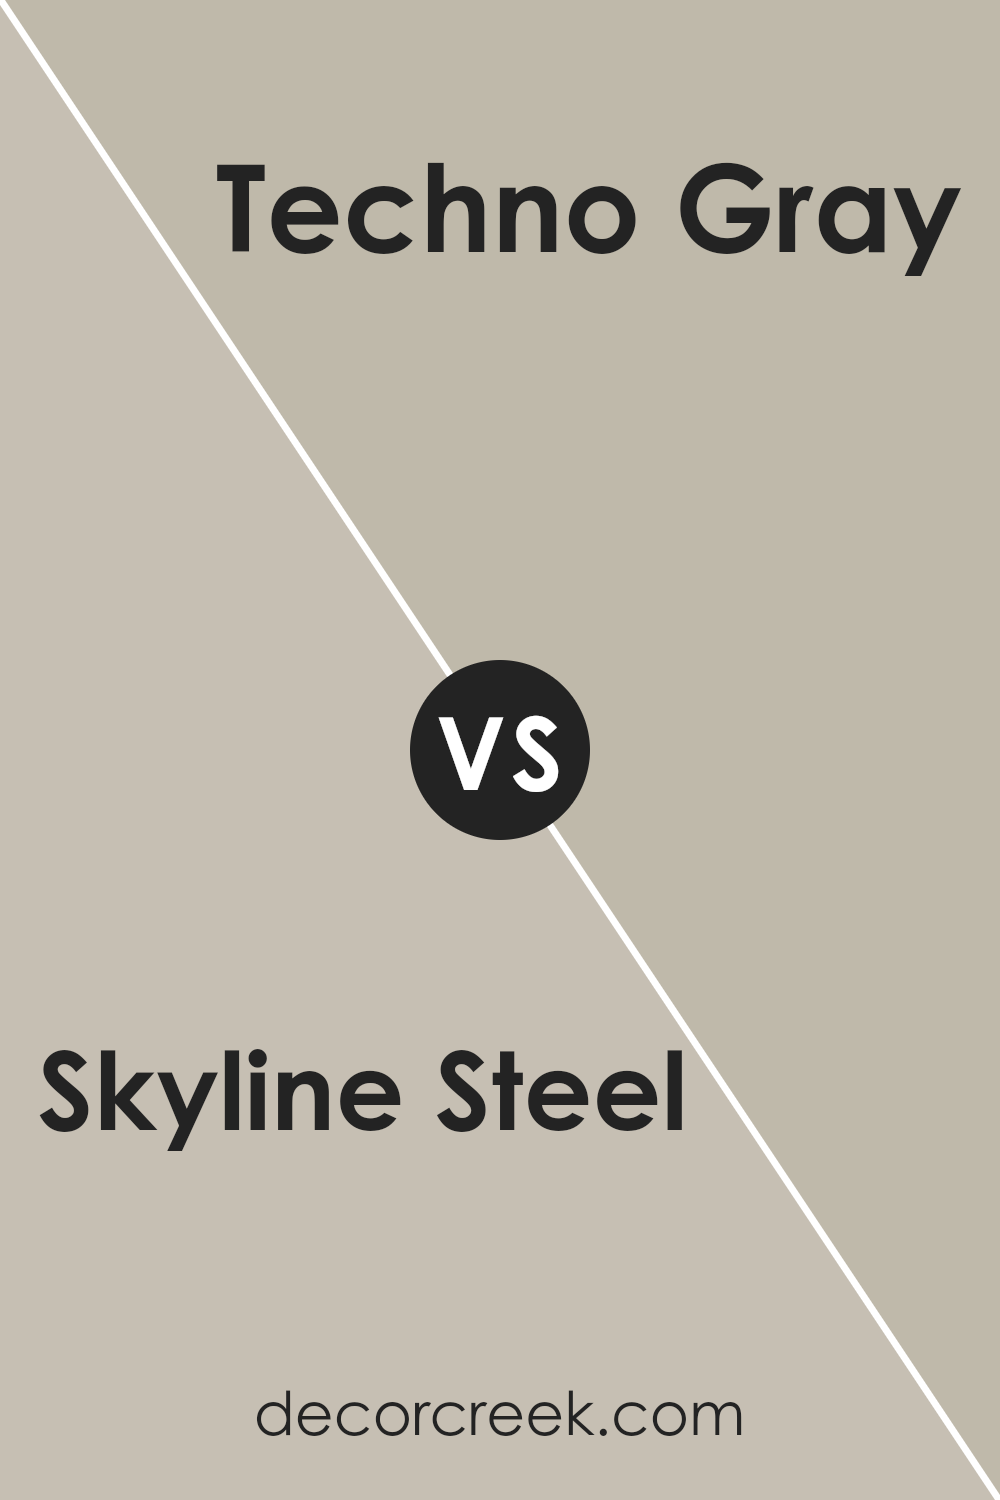 skyline_steel_sw_1015_vs_techno_gray_sw_6170